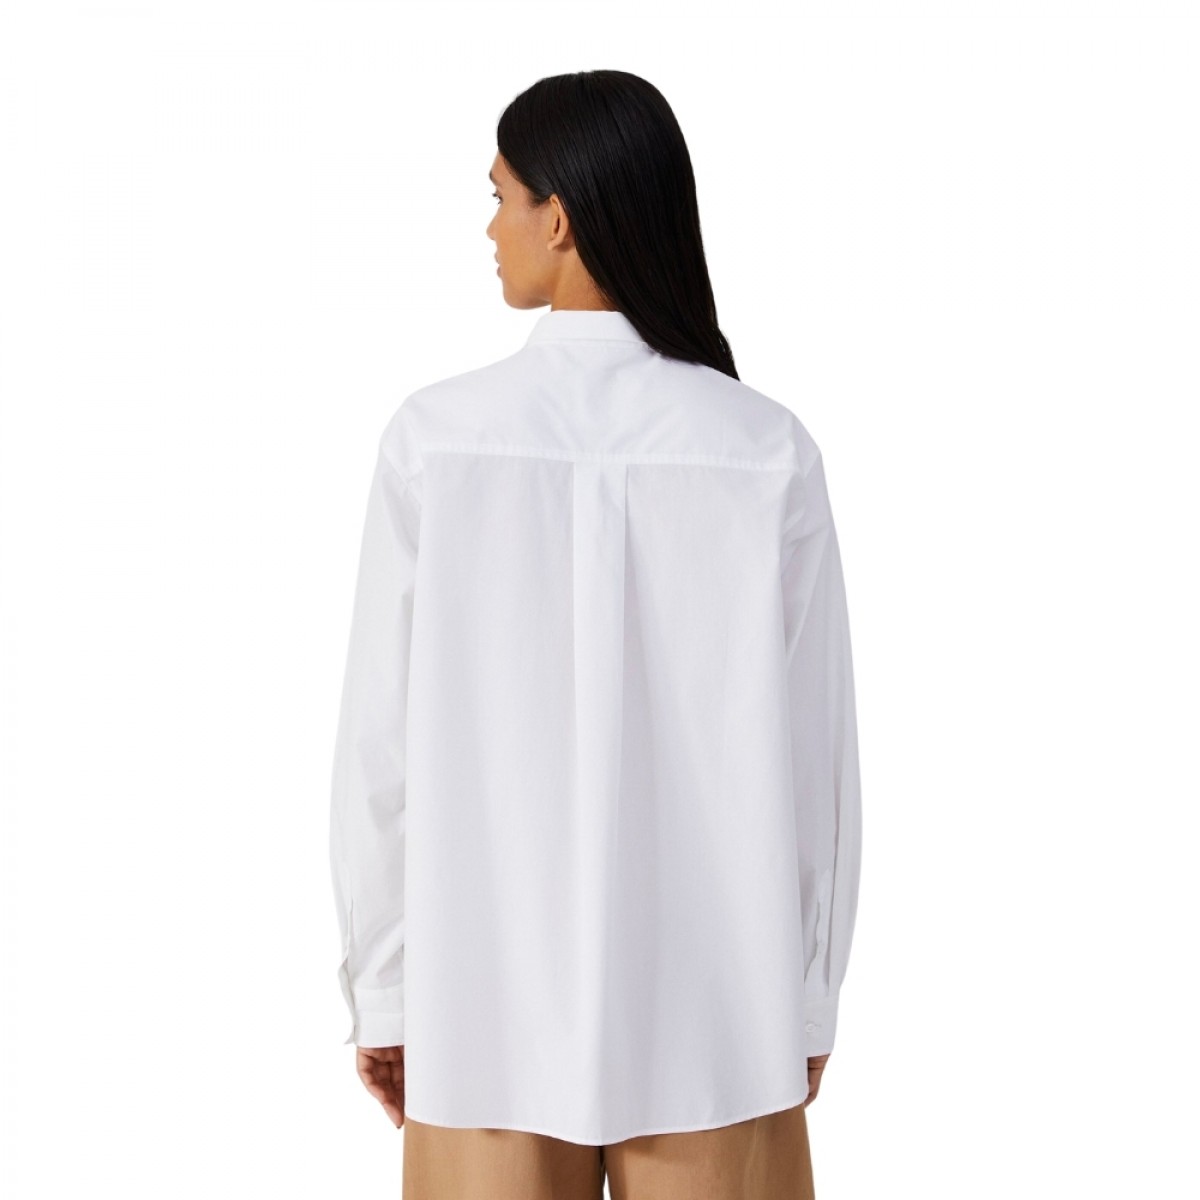 philo shirt tailored - white - ryg